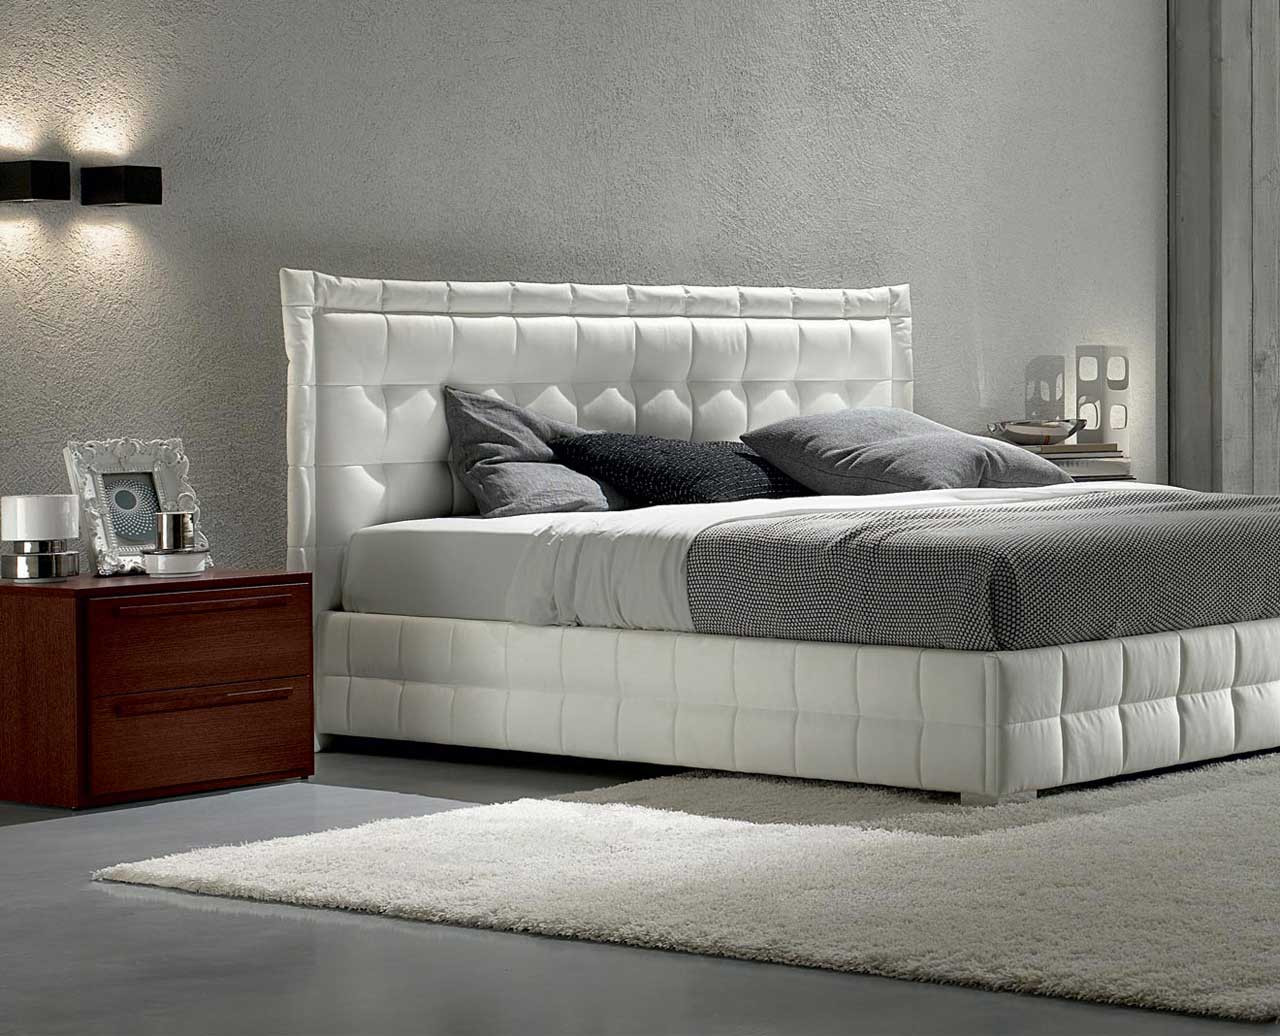 Modern White Bedroom
 White Bedroom Furniture for Modern Design Ideas Amaza Design